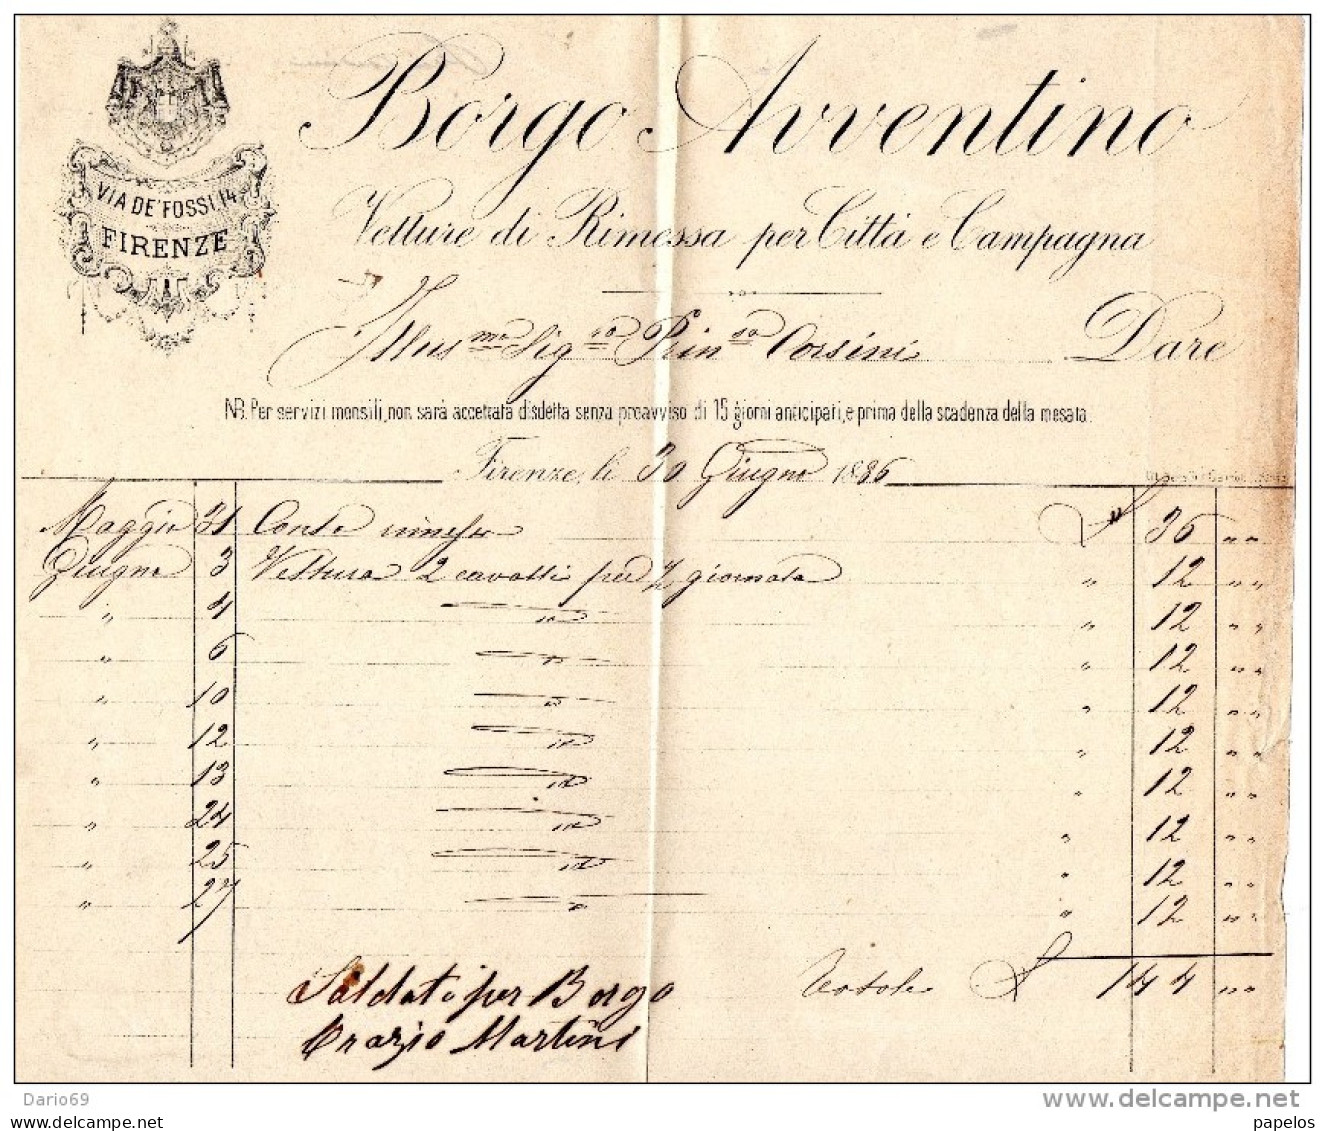 1886  FIRENZE -  BORGO AVENTINO VETTURE DA RIMESSA PER CITTA'  E CAMPAGNA - Italie